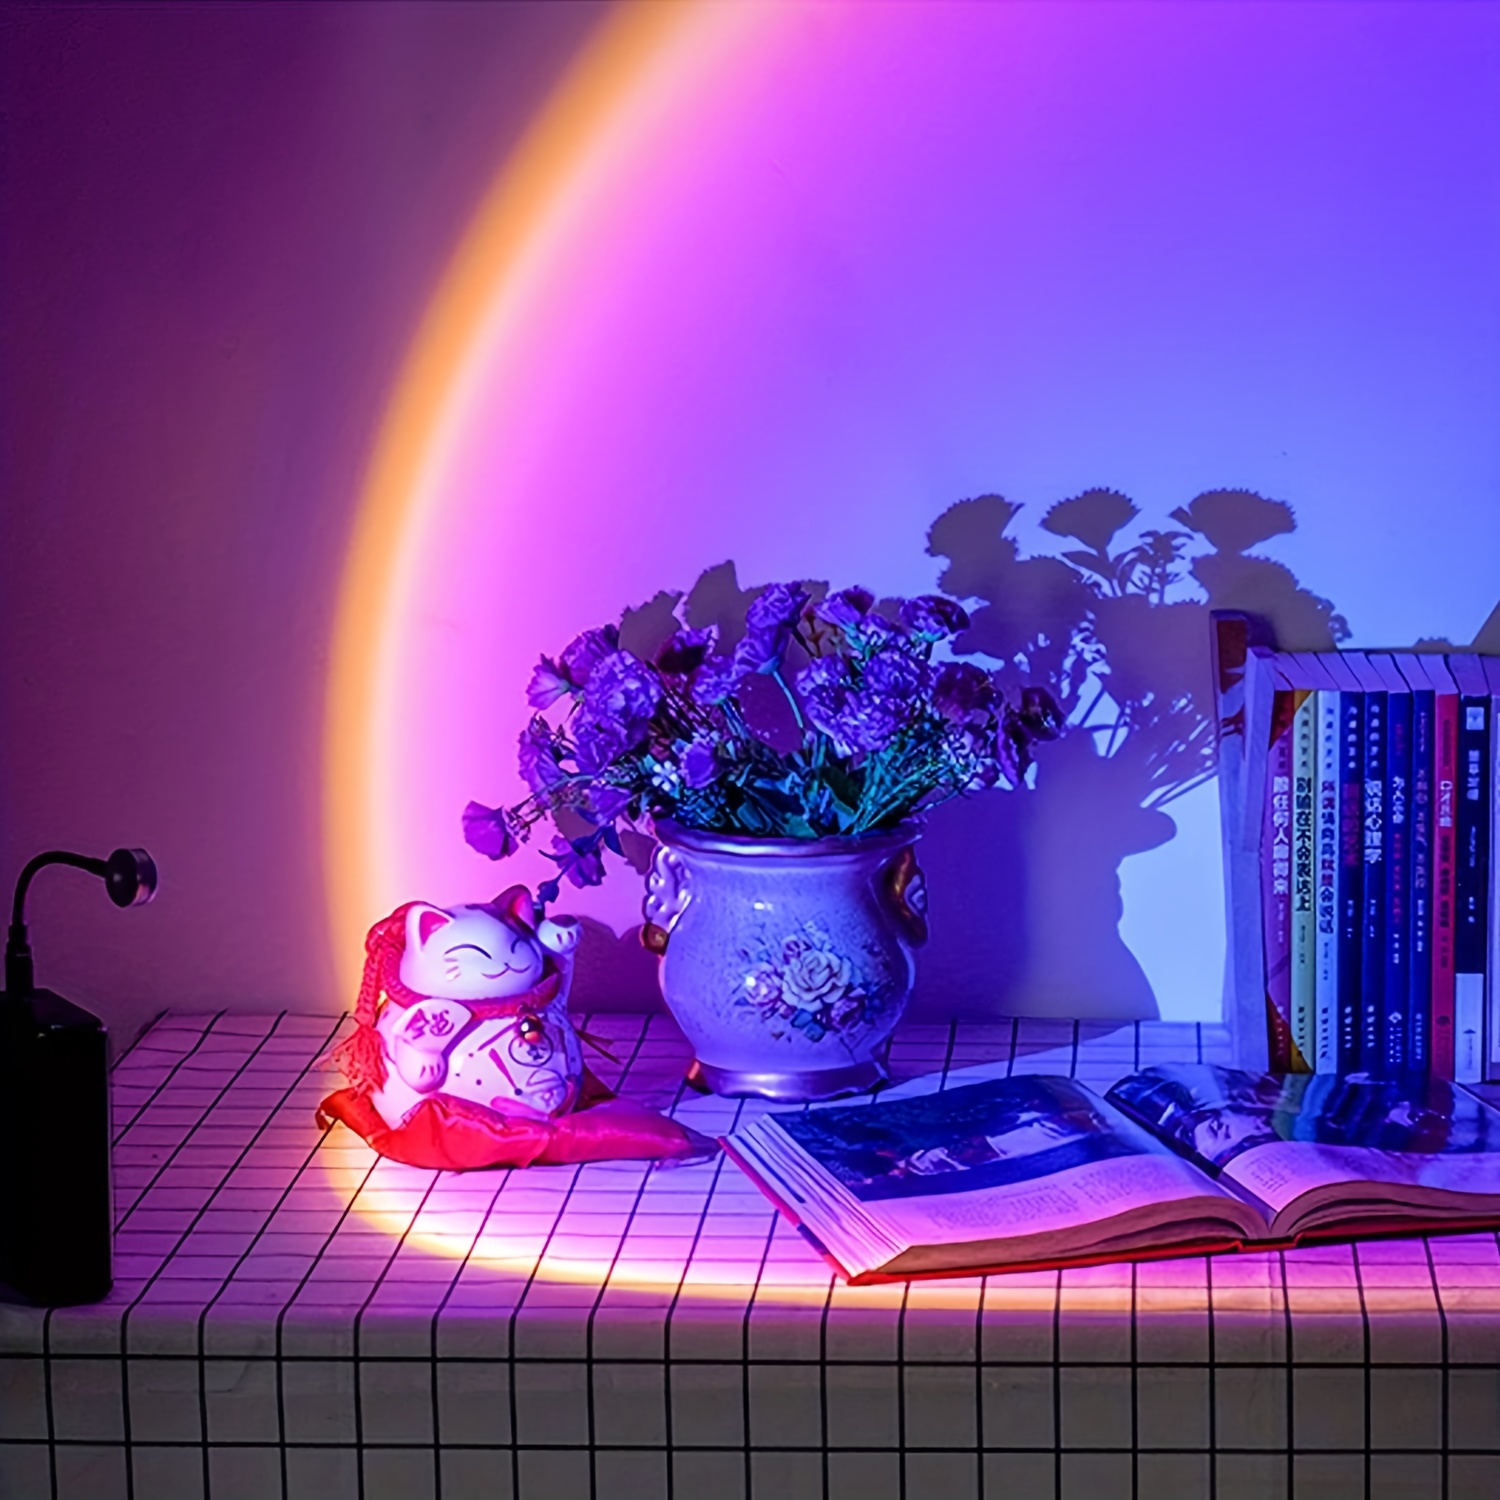 ShenMo Sunset Lamp Lampe cher de Soleil Veilleuse Led Chambre Neon